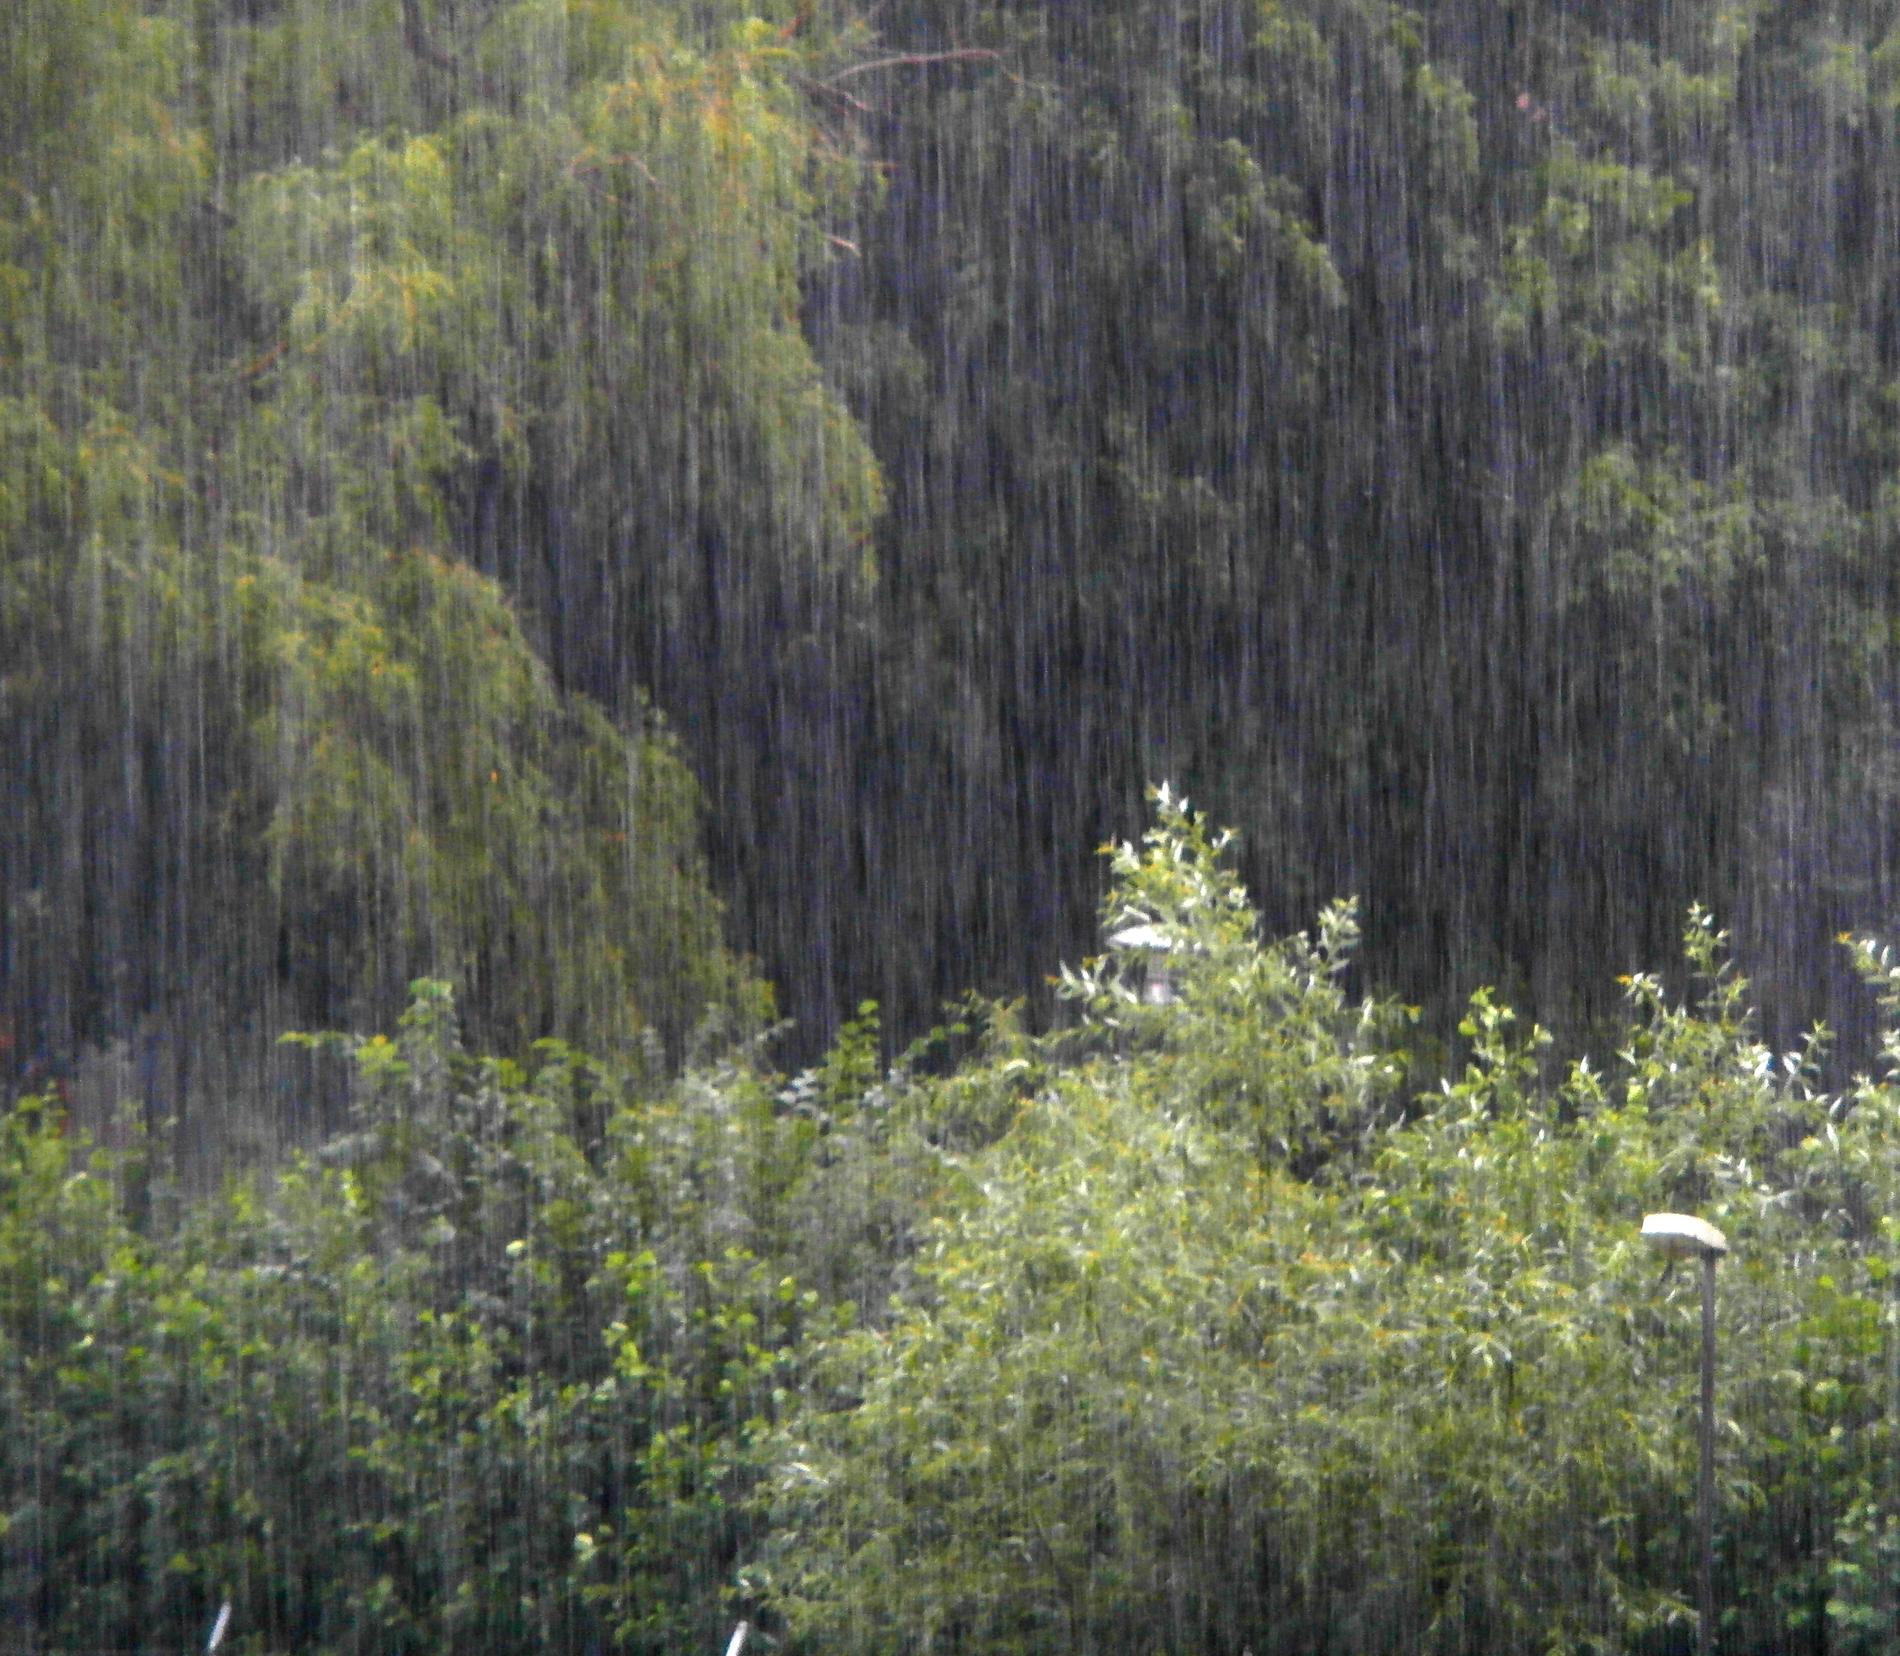 Regnet vräkte ner på Reimersholme på eftermiddagen den 1 augusti.